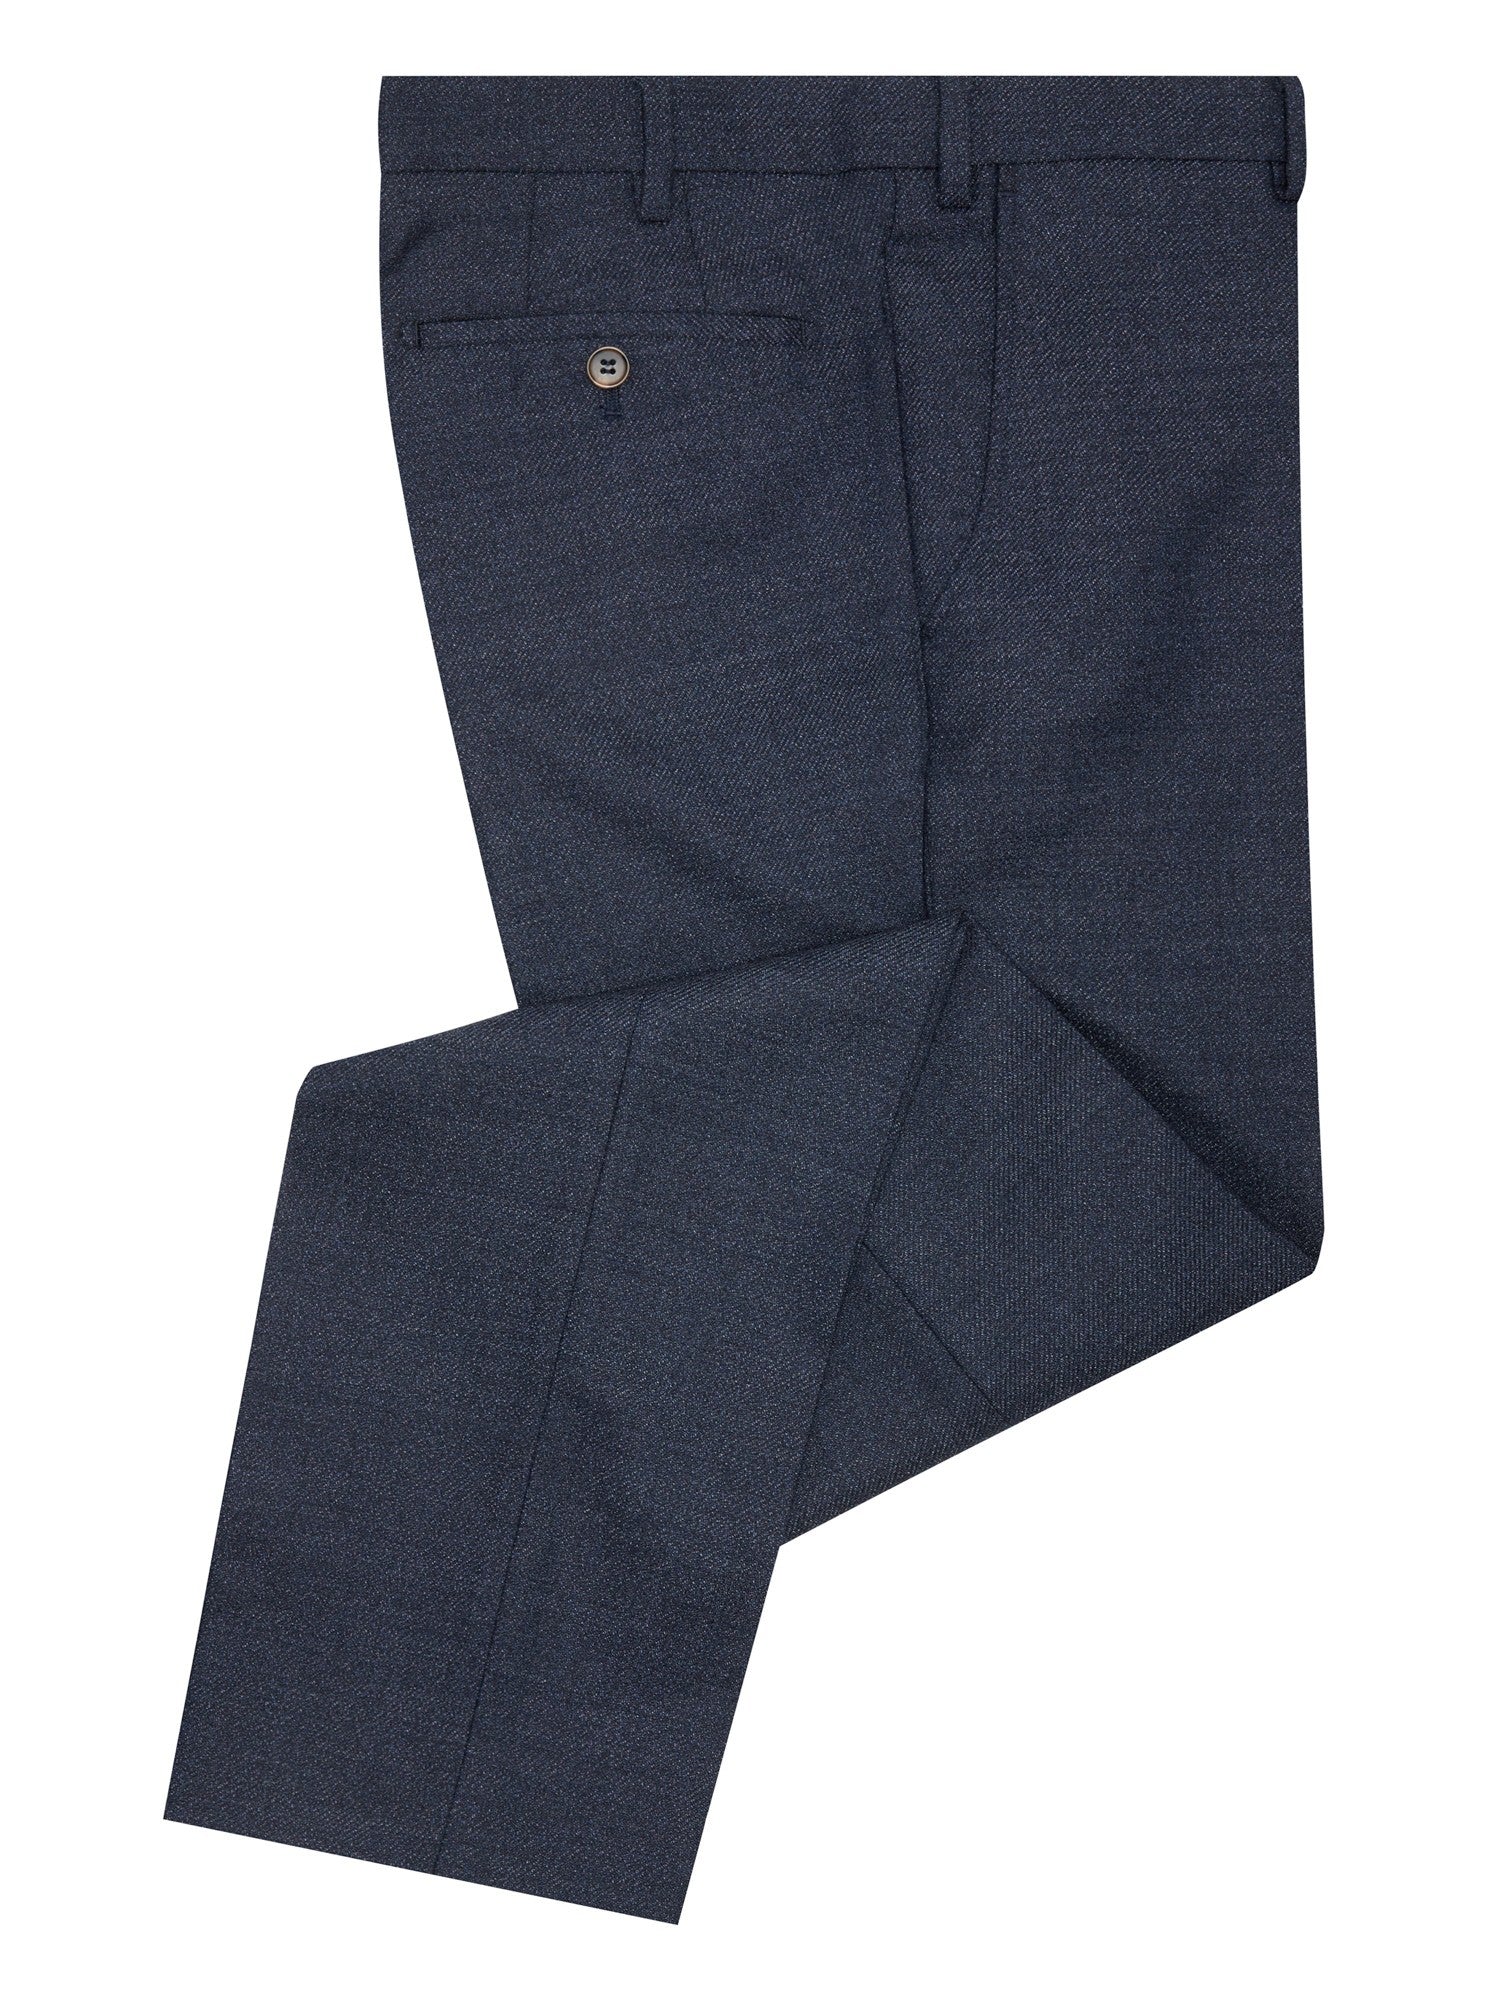 Douglas Blue Mix & Match Suit Trousers Long Length